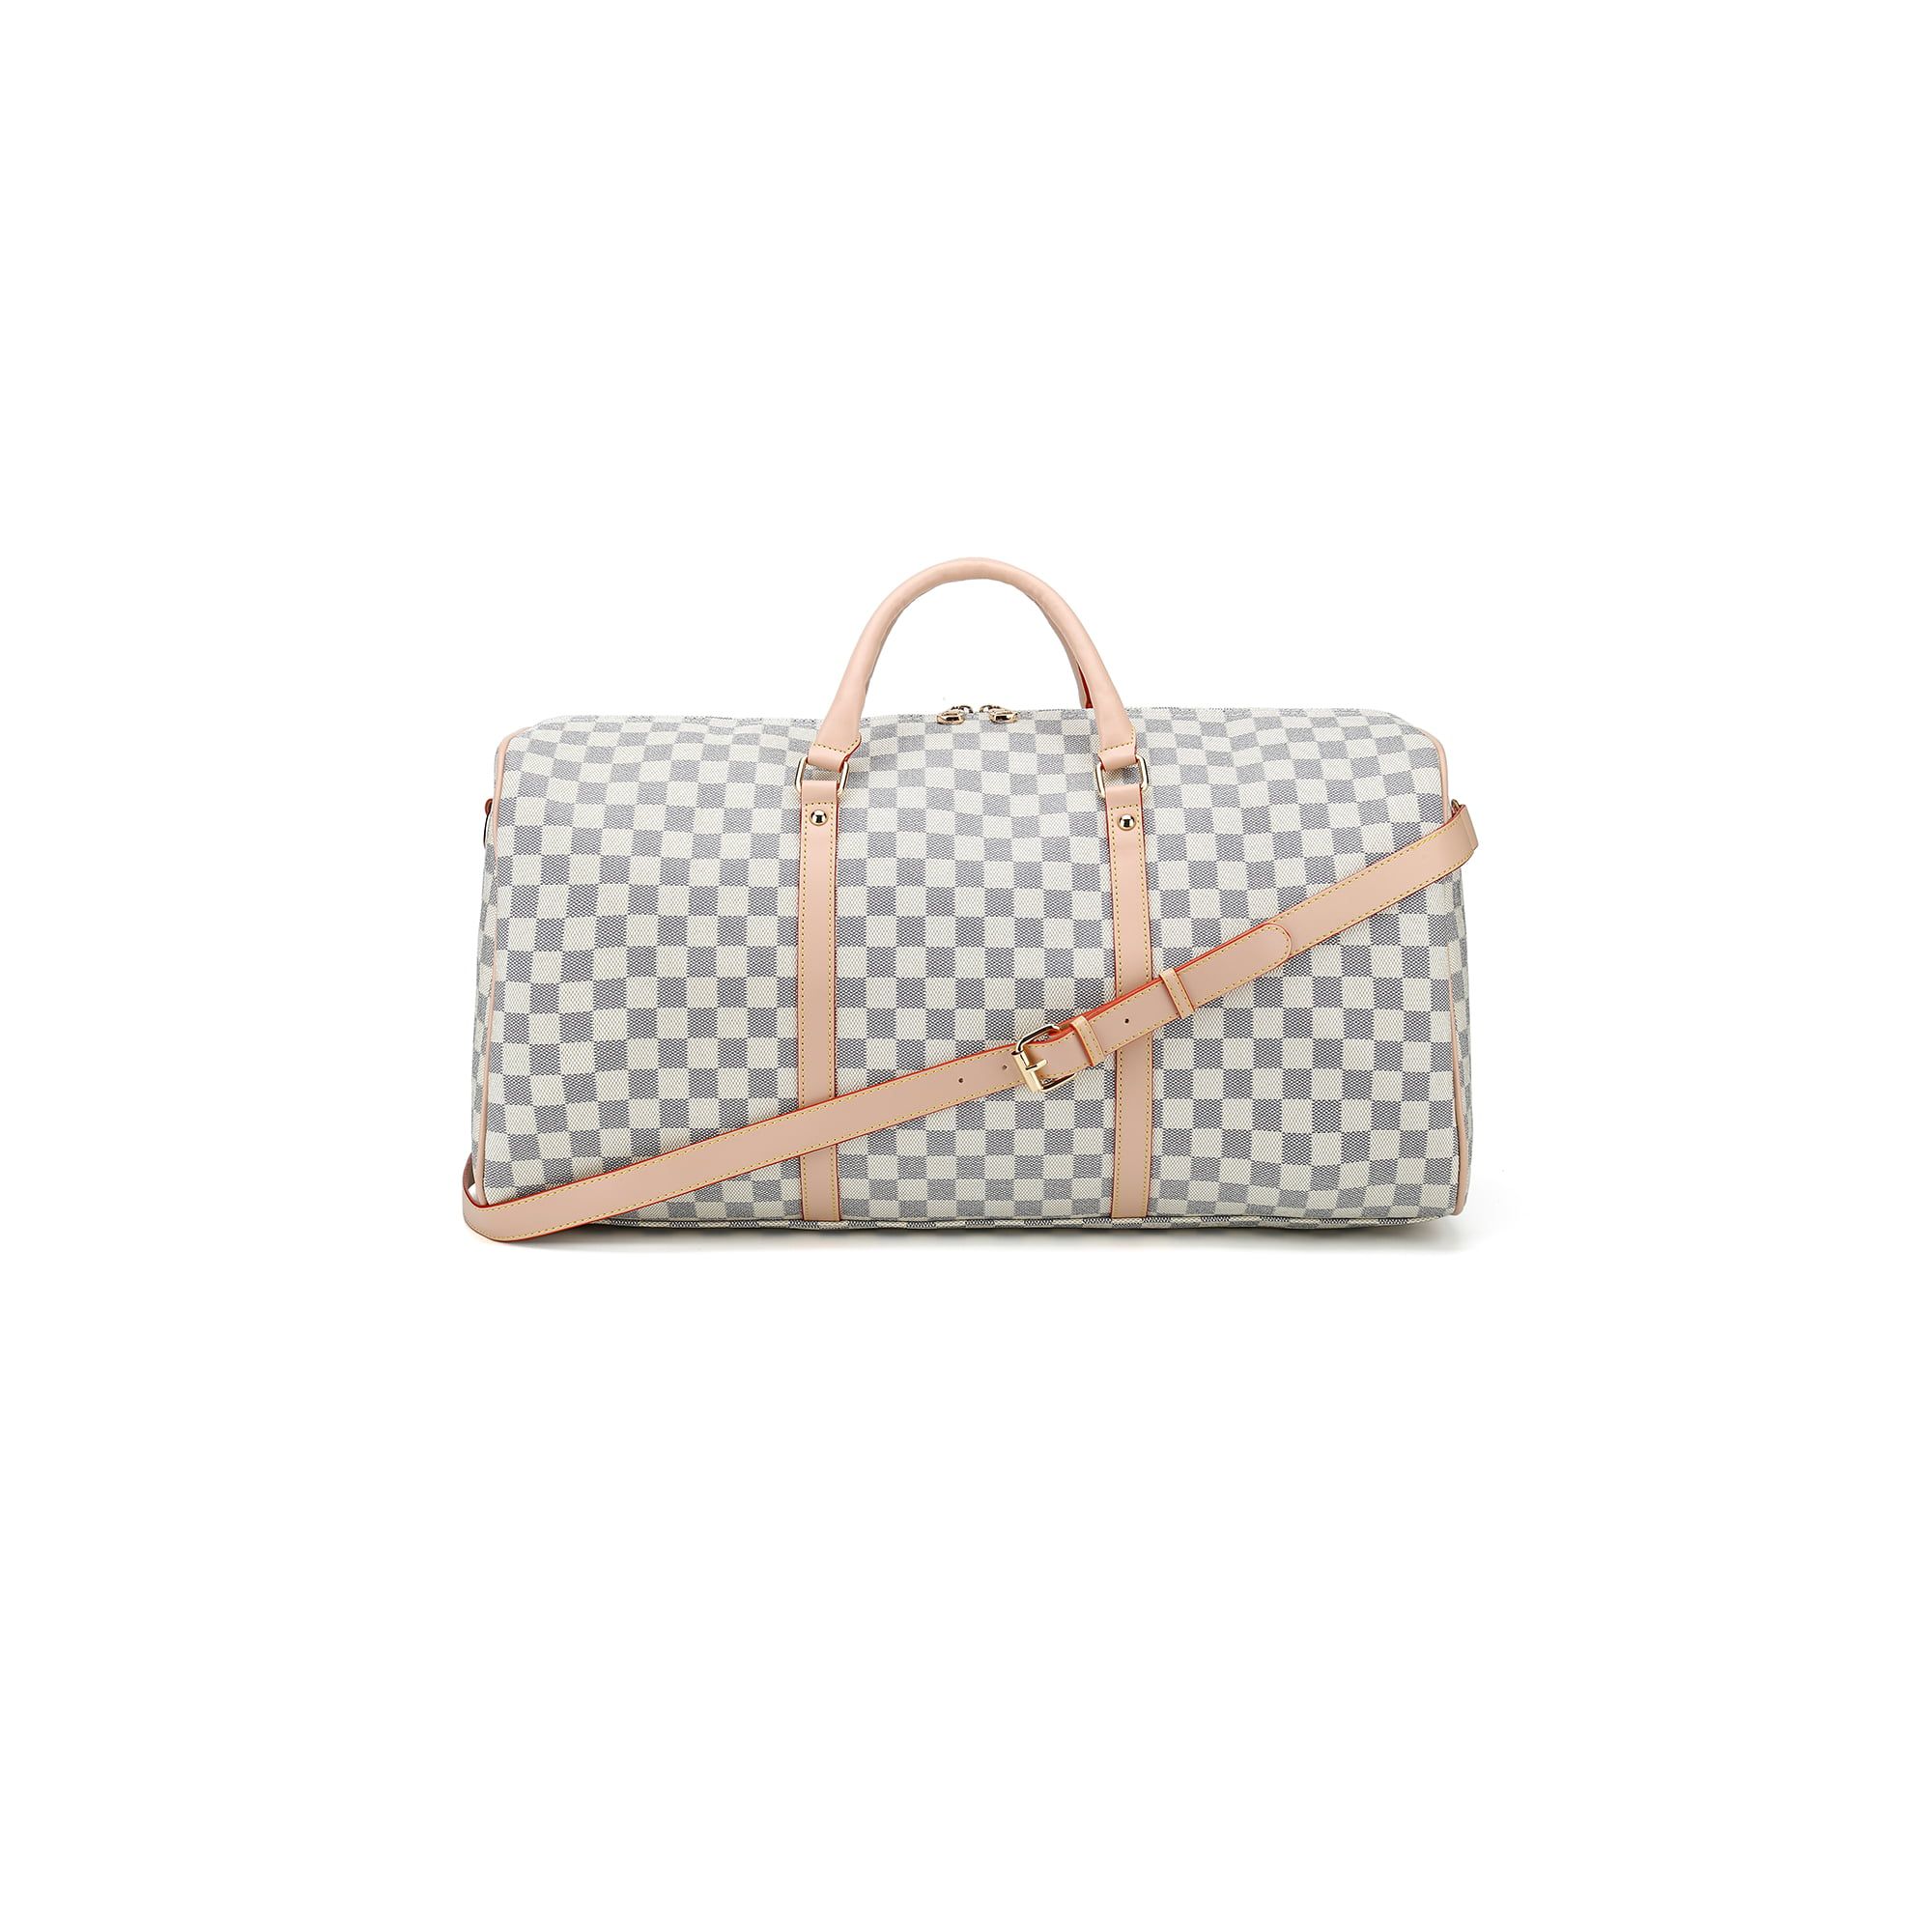 TWENTY FOUR 21" Checkered Bag Travel Duffel Bag Weekender Overnight Luggage Shoulder Bag For Men ... | Walmart (US)